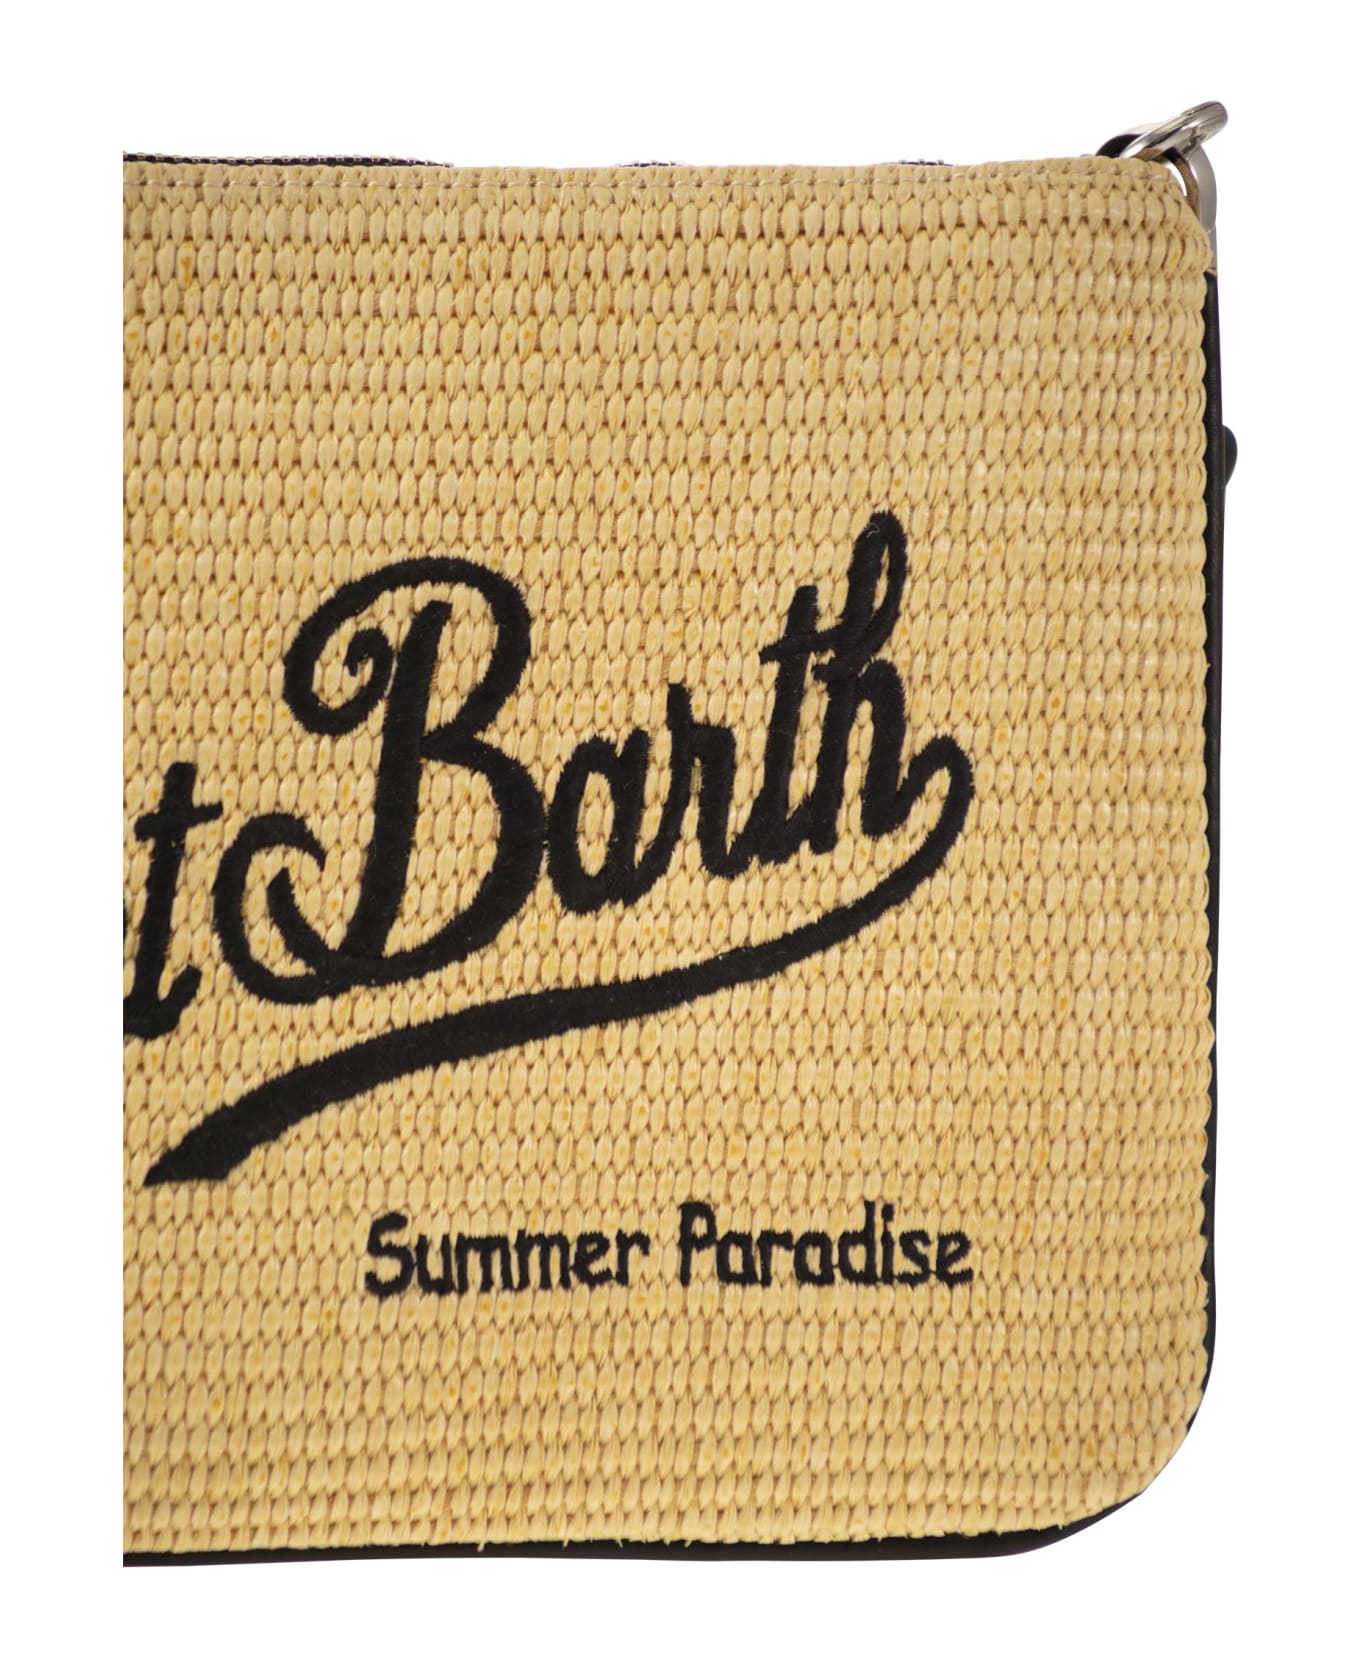 MC2 Saint Barth Parisienne - Straw Clutch Bag - Natural